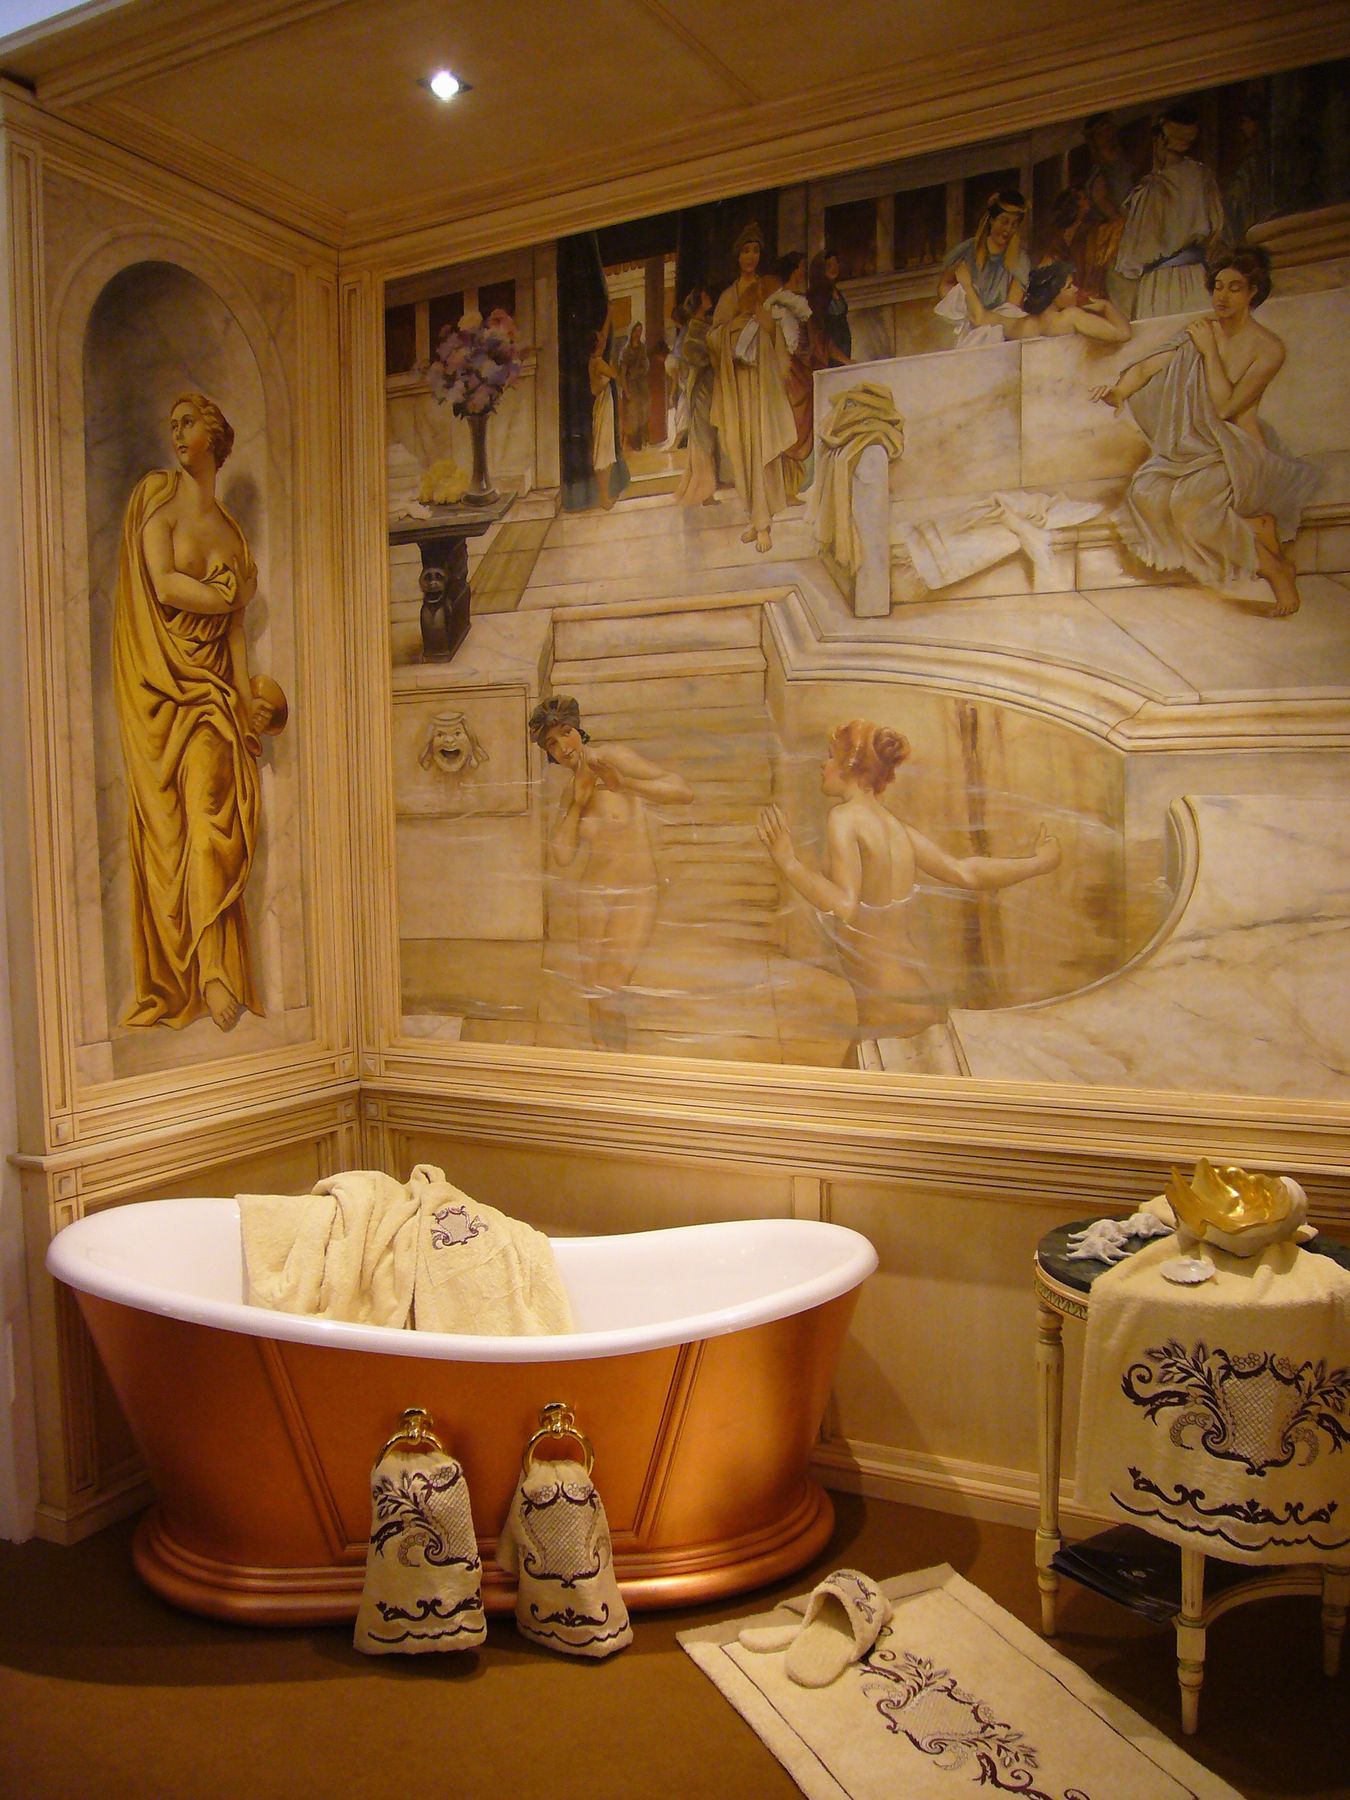 Donne-al-bagno.-Affresco-ritraente-una-scena-termale-dellantica-Roma-unopera-magistrale-di-Alma-Tadema-reinterpretata-da-Mariani-Affresc.jpg